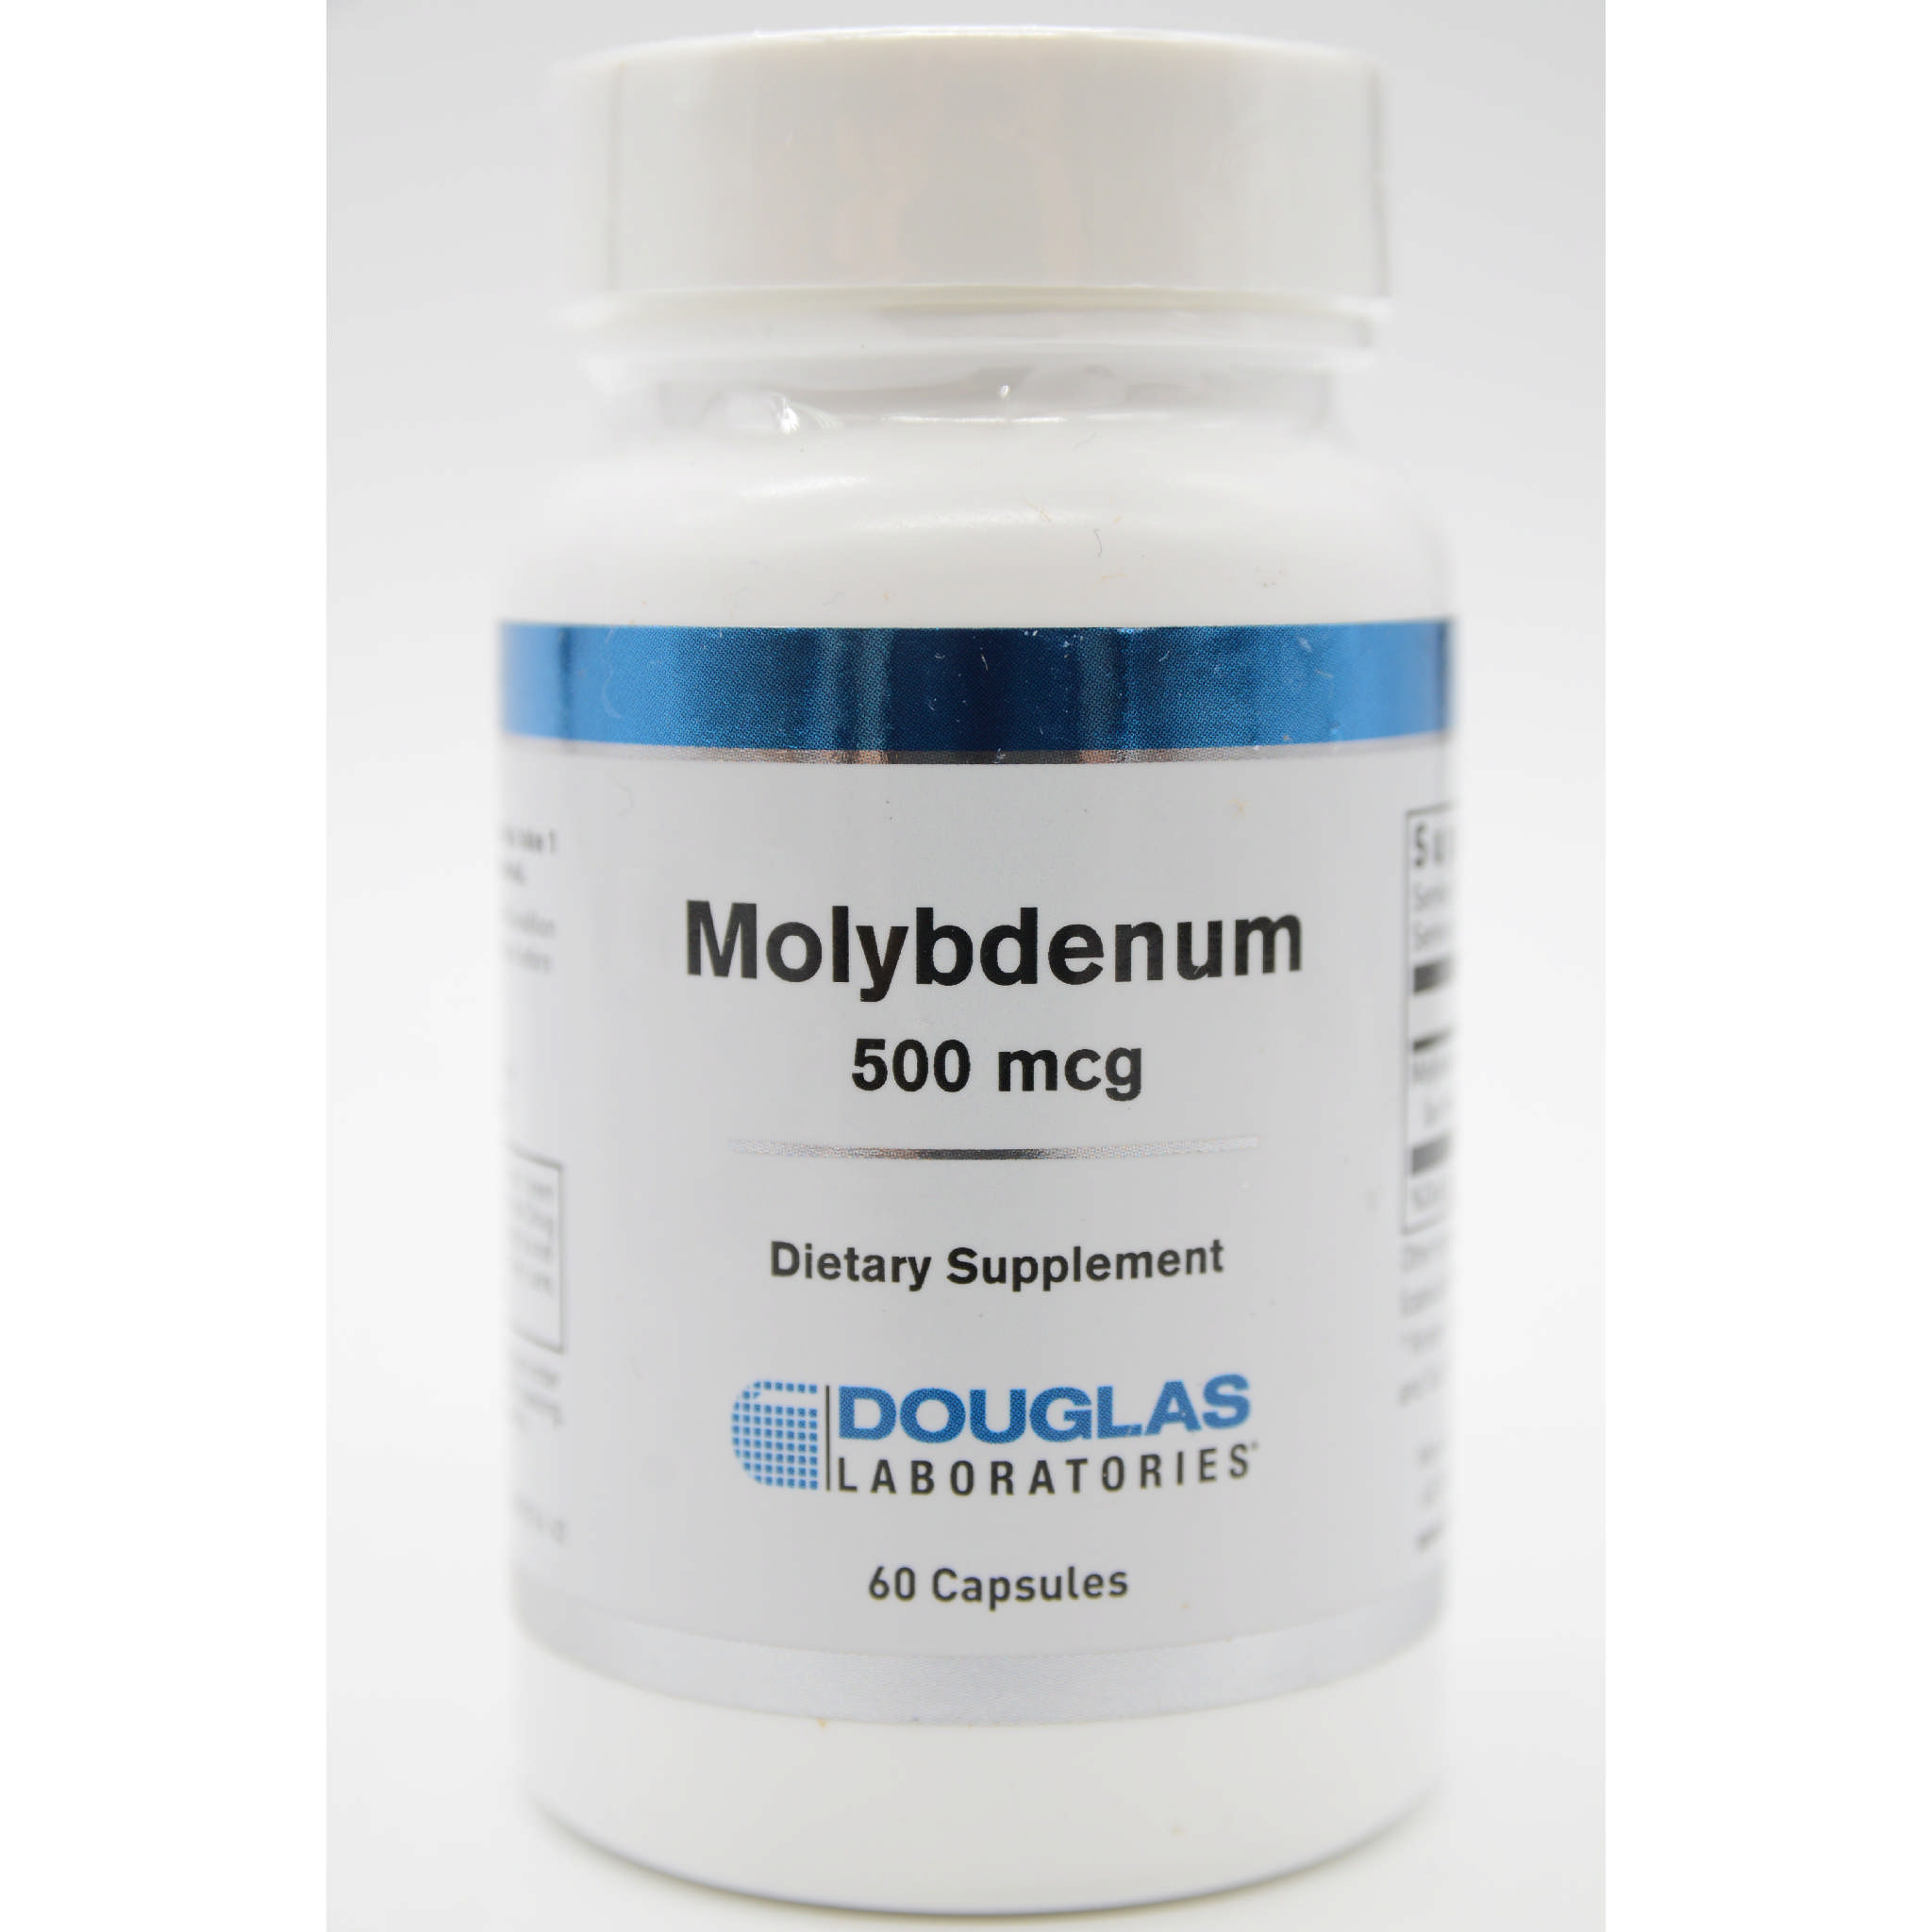 Douglas Laboratories - Molybdenum 500